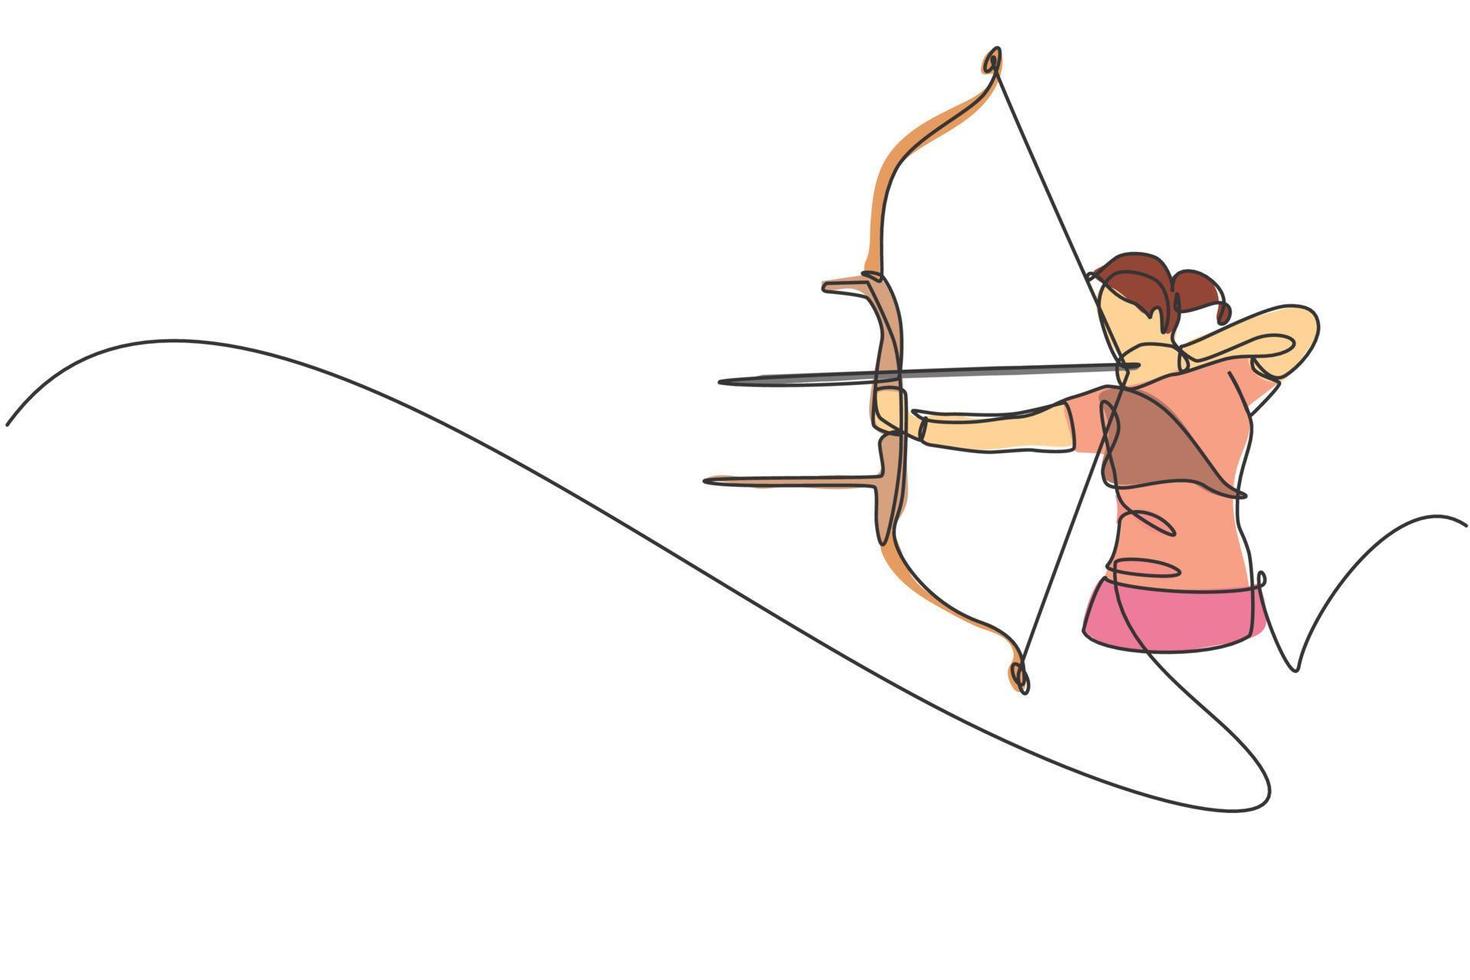 un disegno a linea singola della messa a fuoco della giovane donna arciere che esercita il tiro con l'arco per colpire l'illustrazione grafica vettoriale del bersaglio. ripresa sana di aggiornamento con il concetto di sport con l'arco. moderno disegno a linea continua